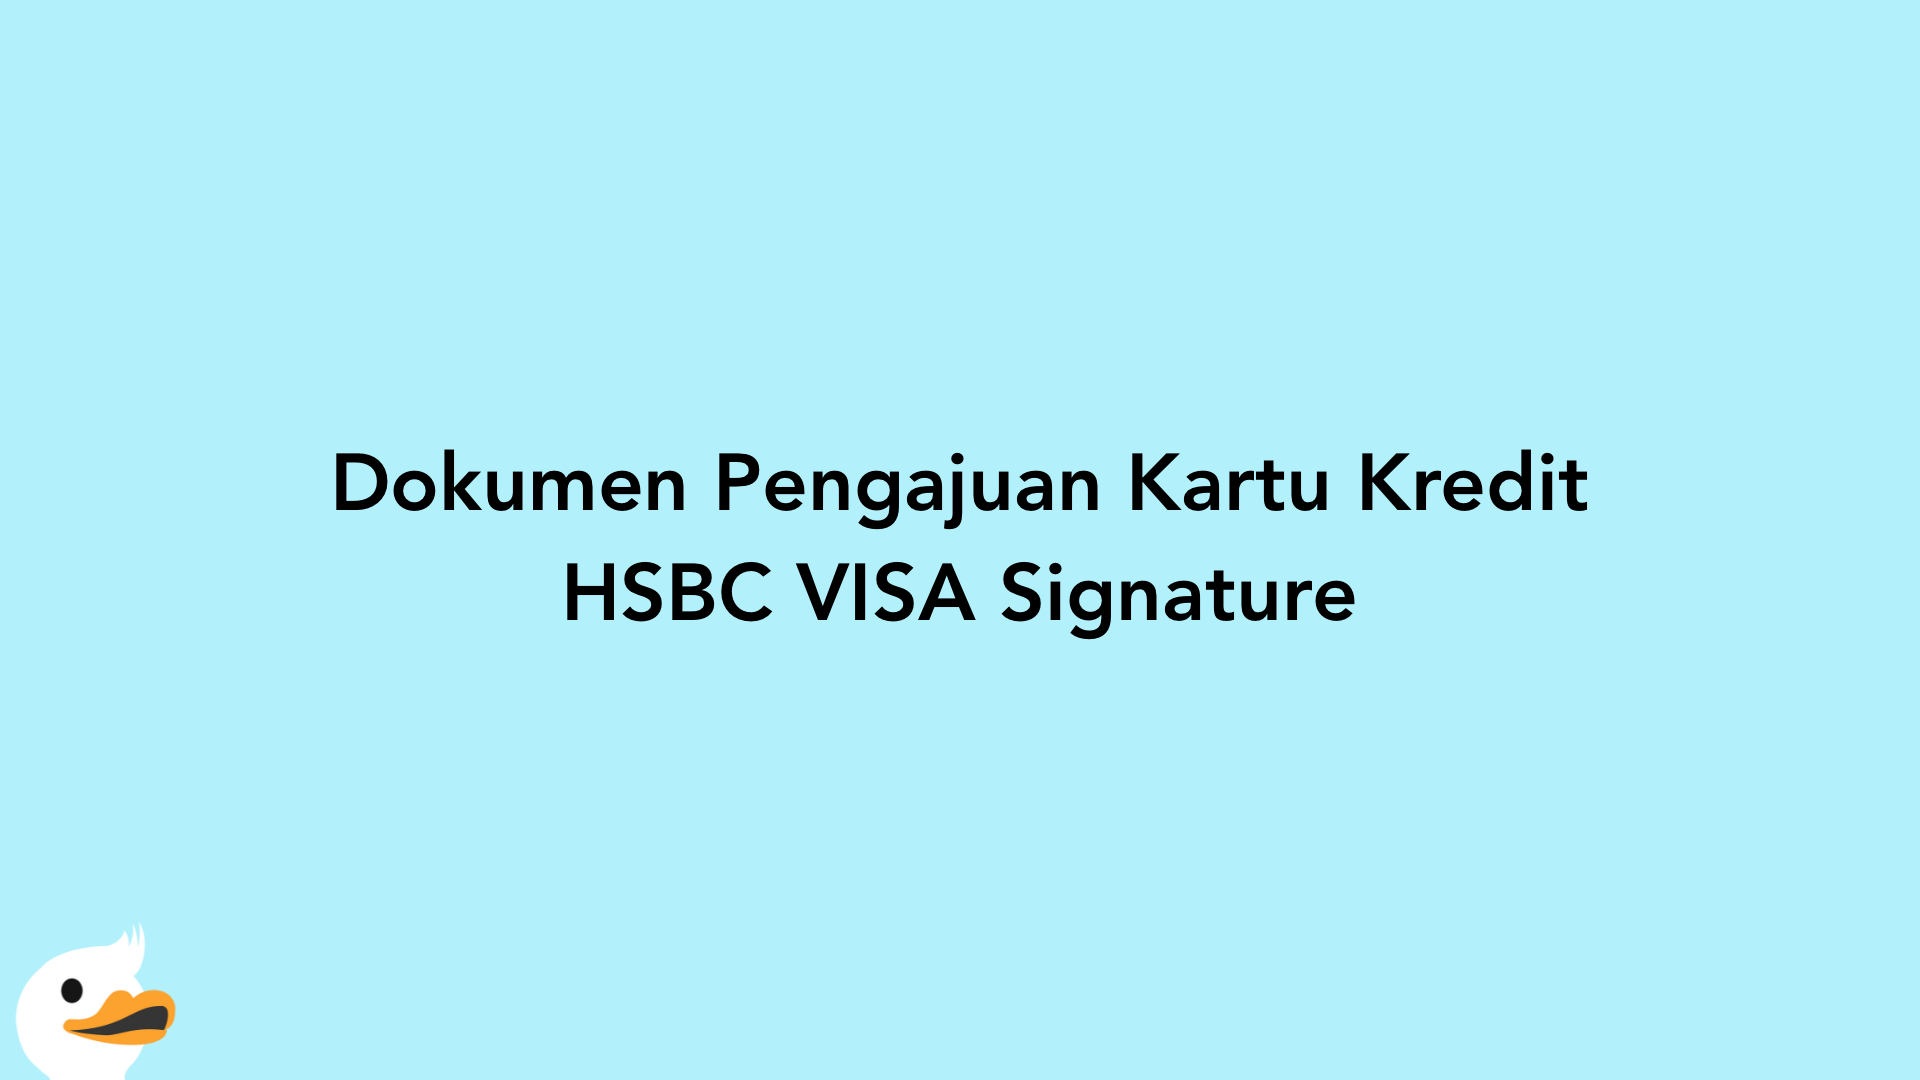 Dokumen Pengajuan Kartu Kredit HSBC VISA Signature